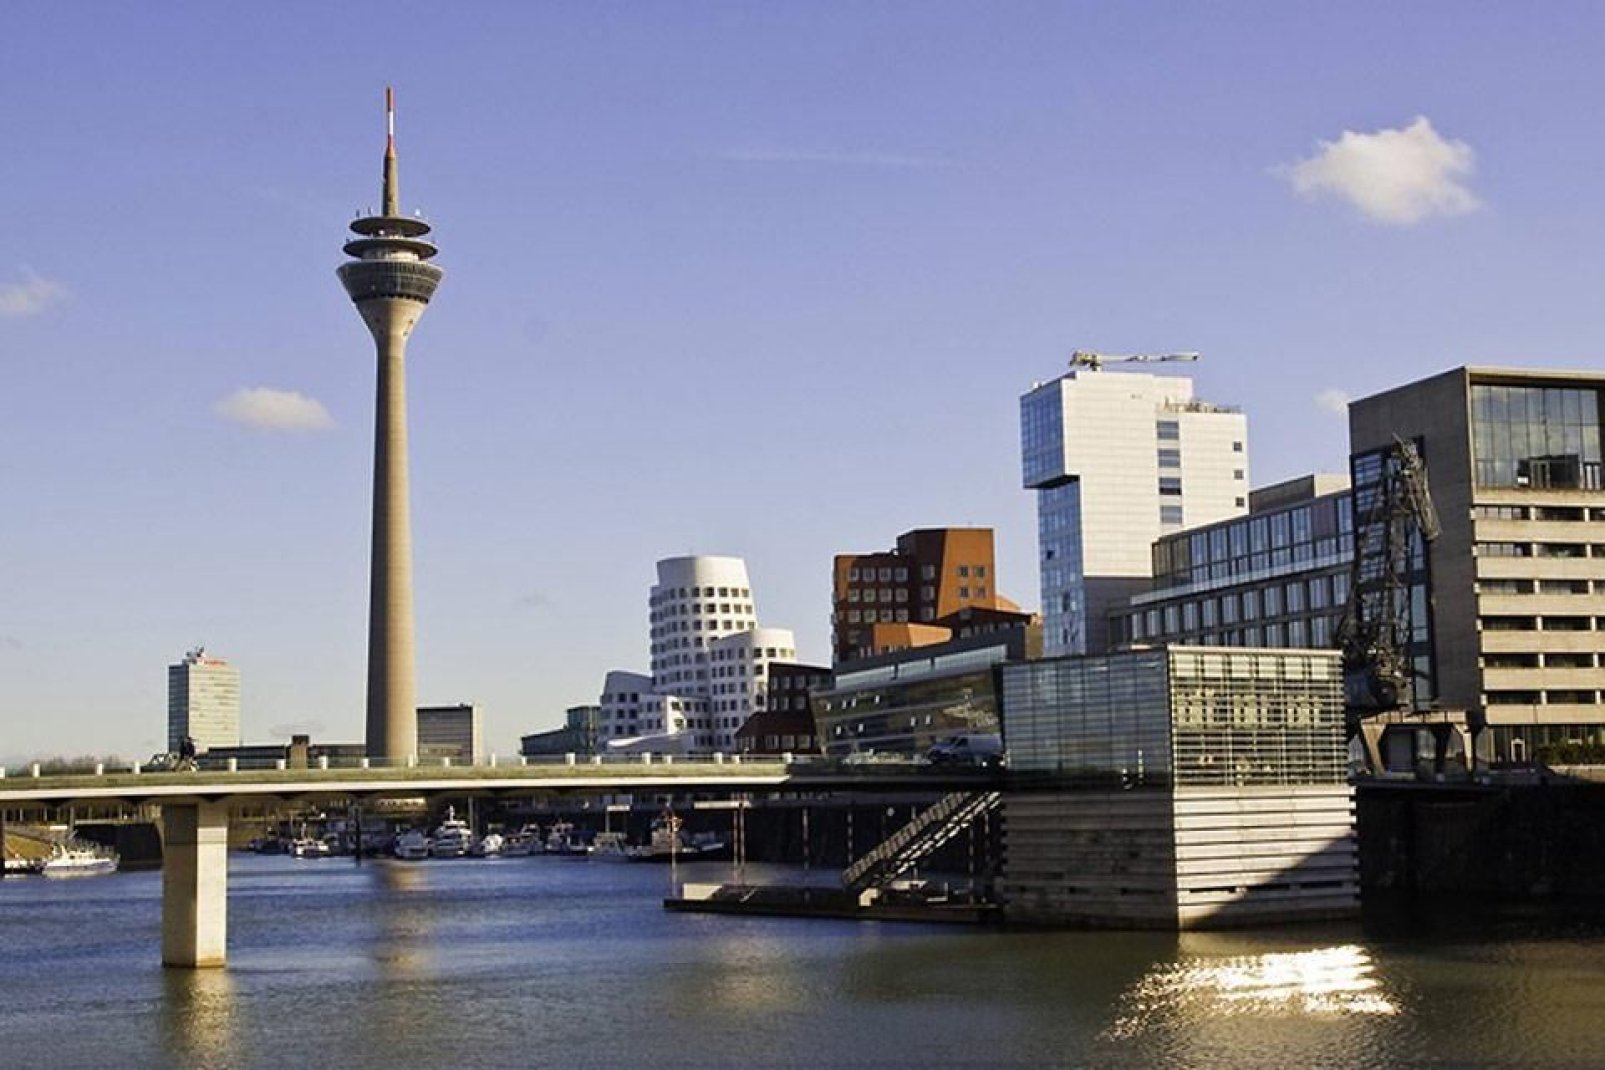 Igual que Colonia, Düsseldorf está a orillas del Rin.